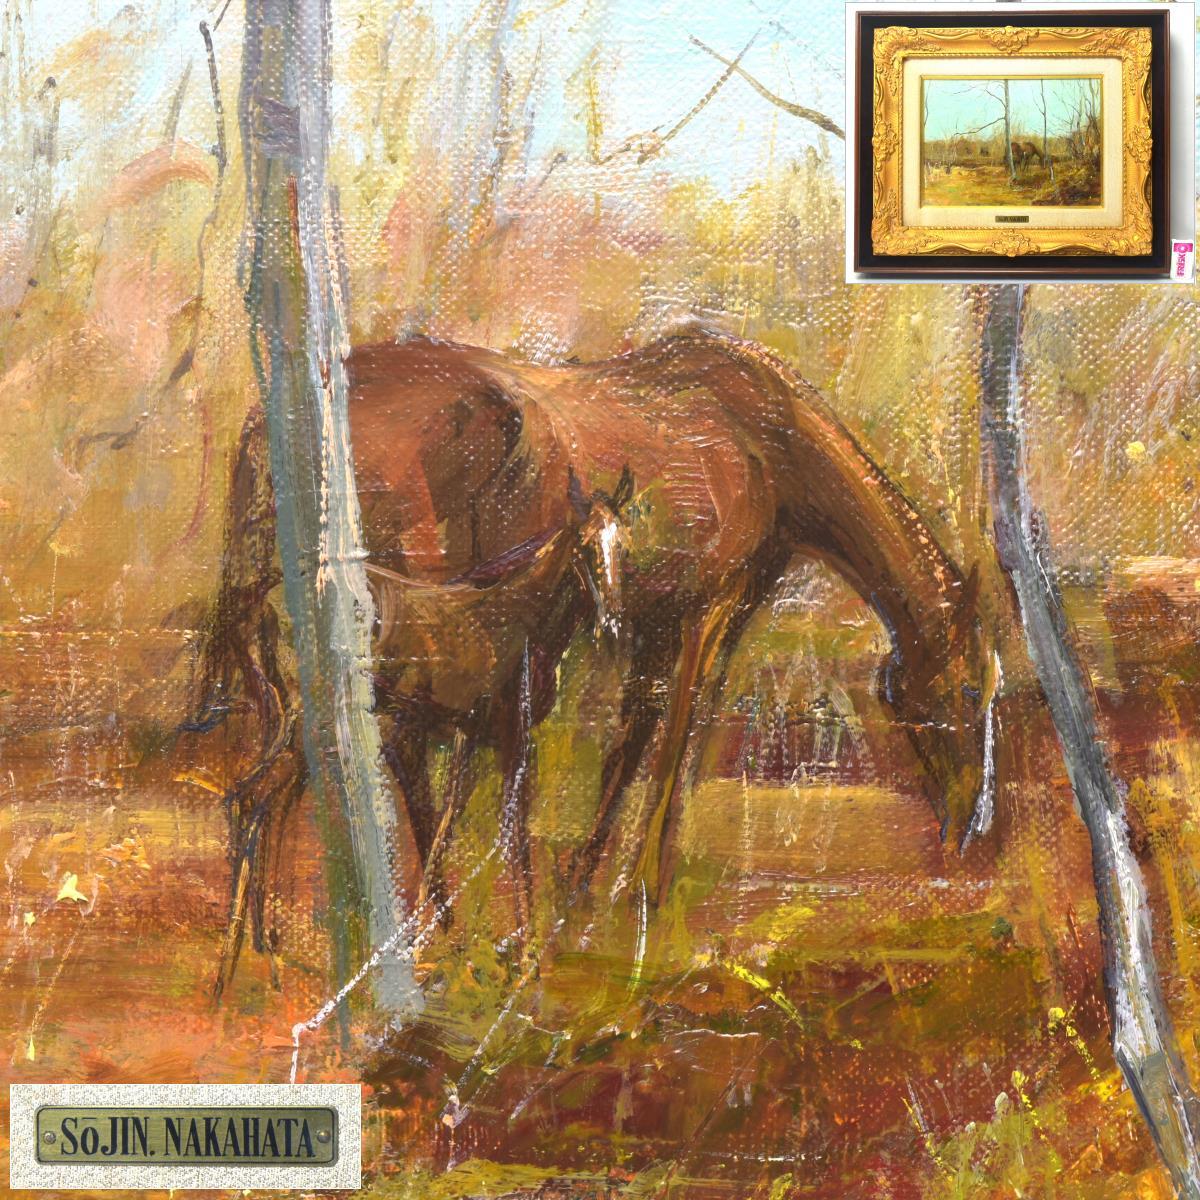 [شوراكو] اللوحة الأصلية لناكاهاتا سوجين حصان وطفل مقاس 4, عرض الإطار 54, 8 سم أصالة سطح الأكريليك مضمونة J1971, تلوين, طلاء زيتي, لوحات حيوانات